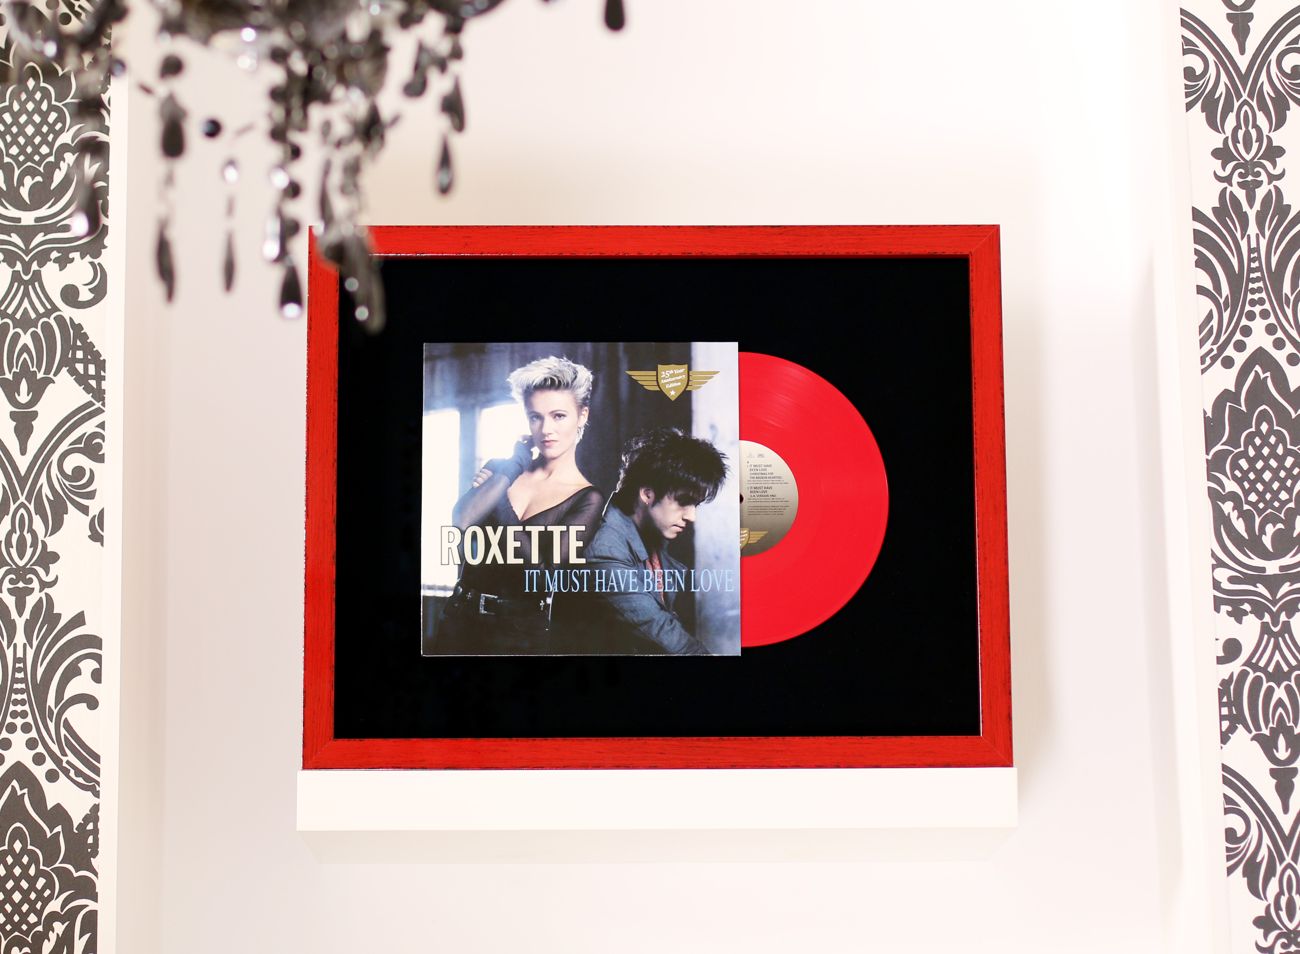 Prostorové rámování LP desky Roxette na sametový podklad do červeného rámu | © Frame-it.cz